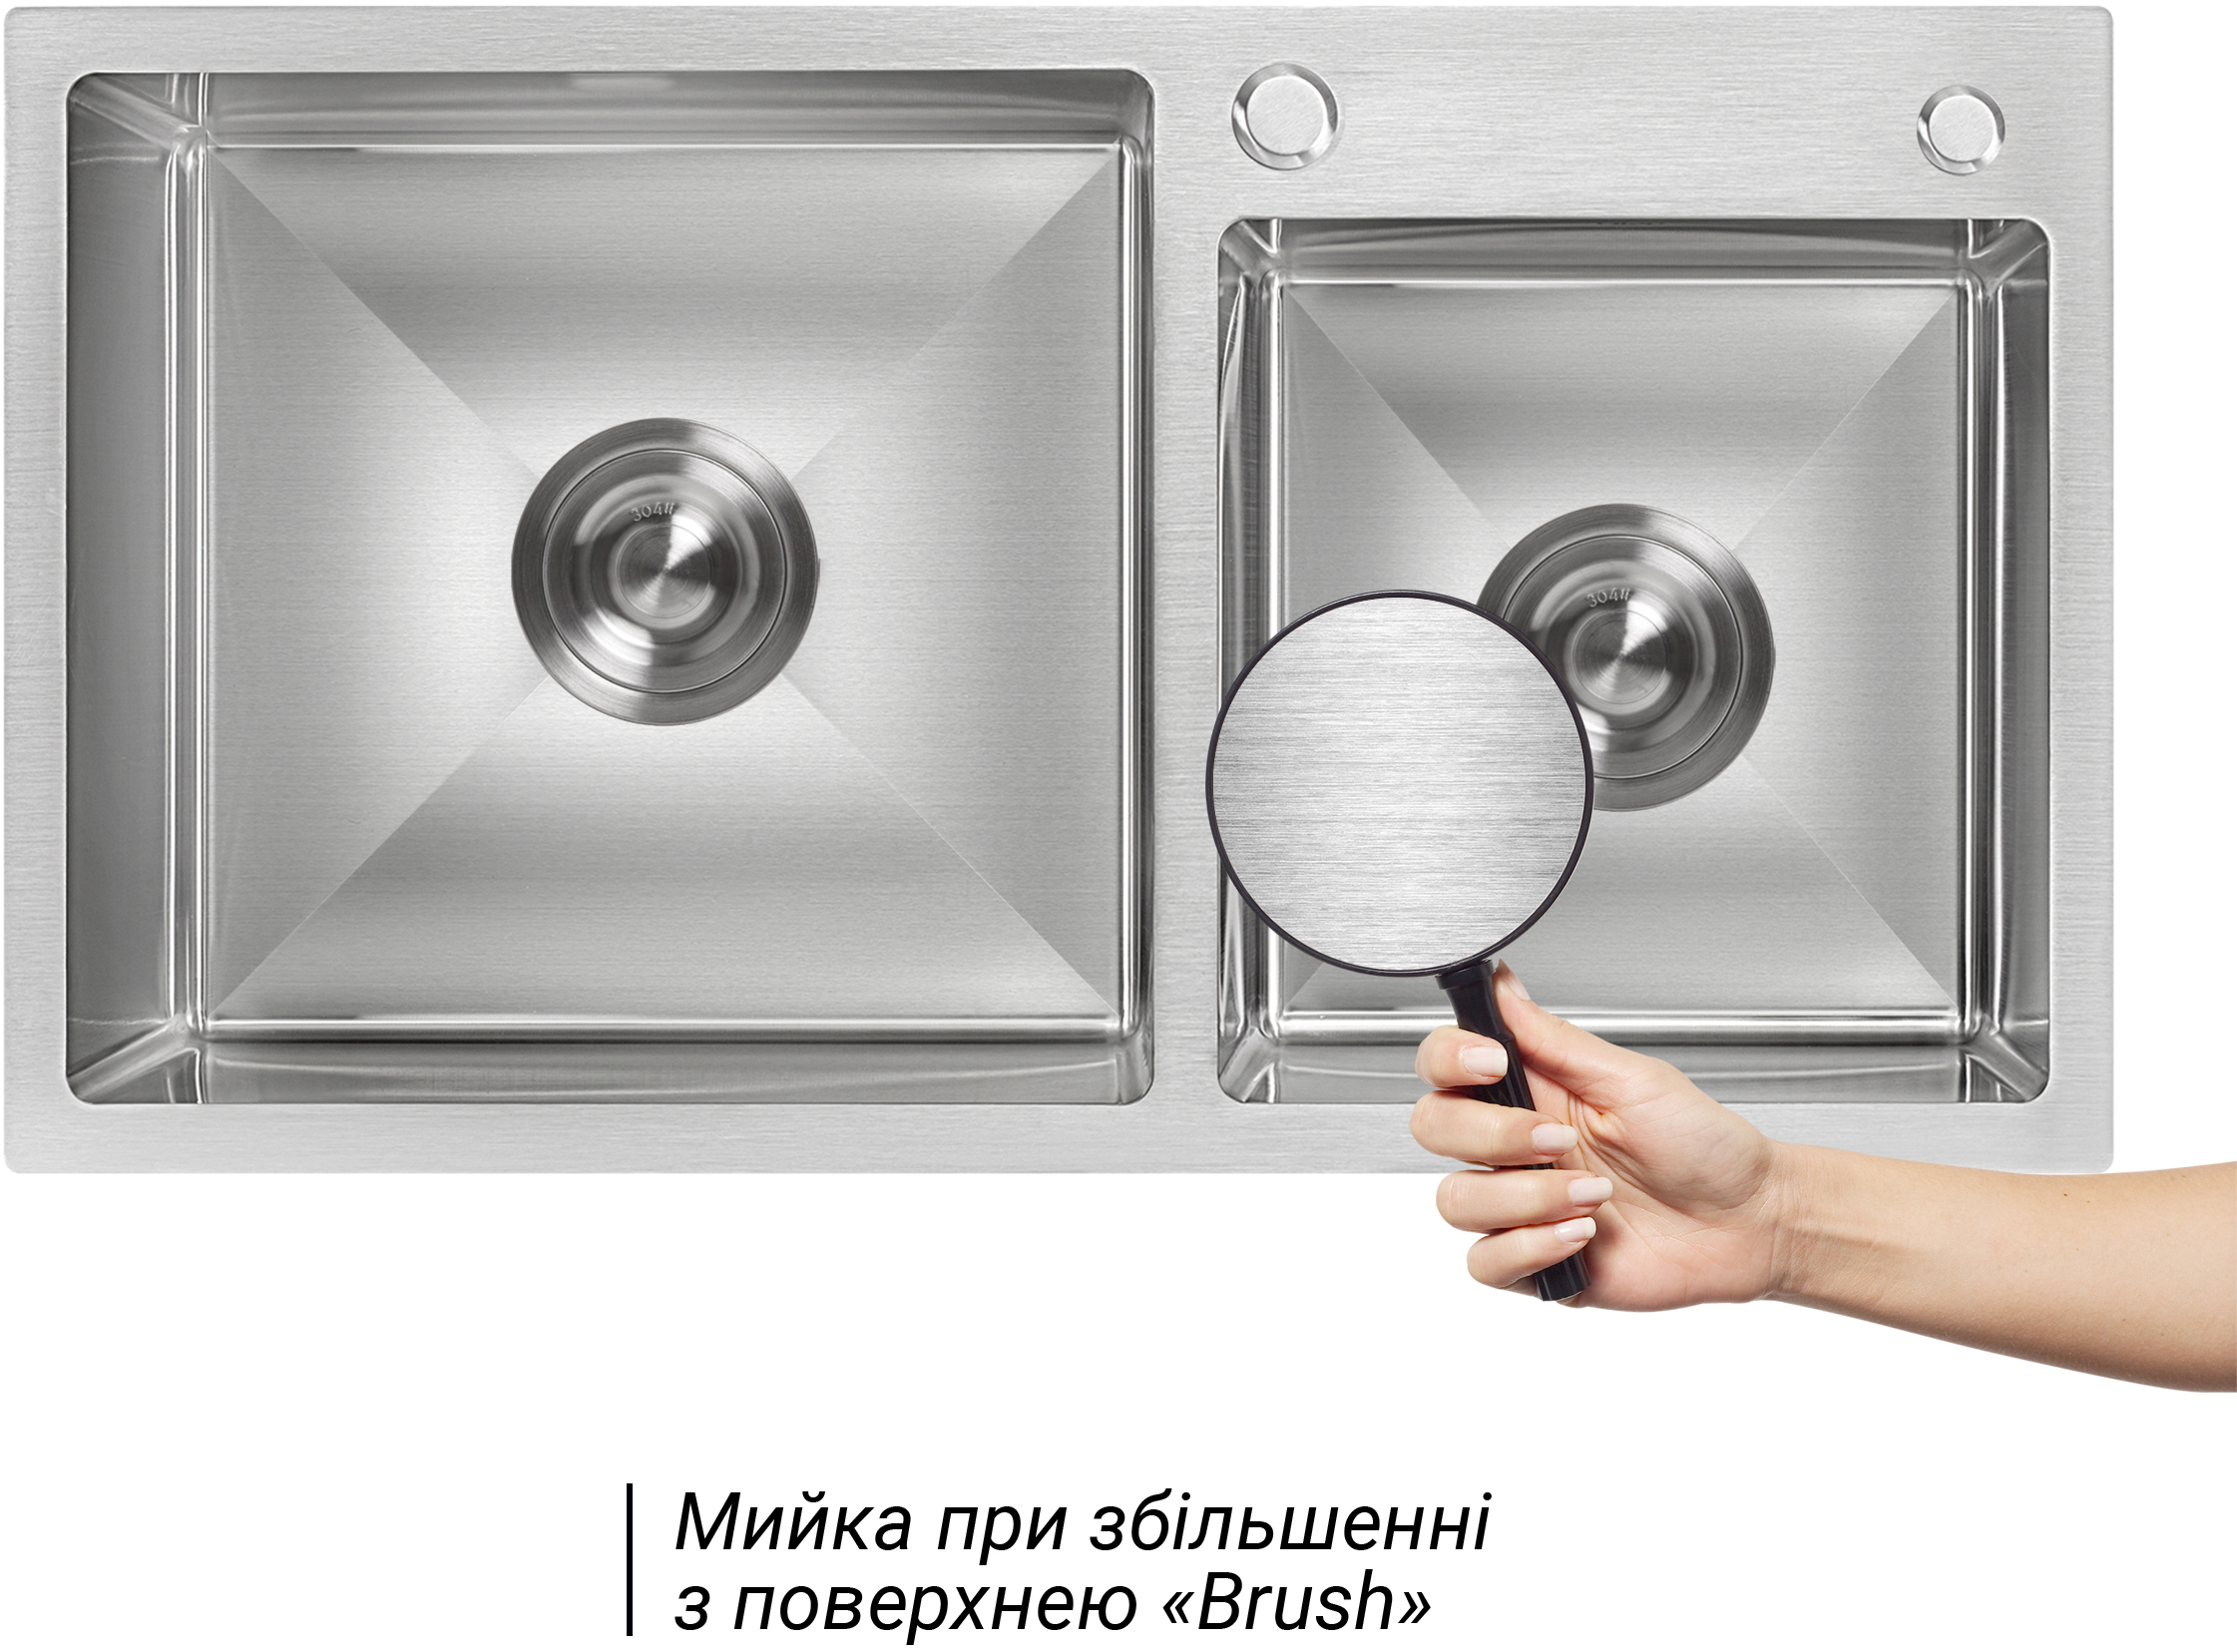 Набор 2 в 1 кухонная мойка + дозатор Lidz H7843 3.0/1.0 мм Brush цена 3961.00 грн - фотография 2